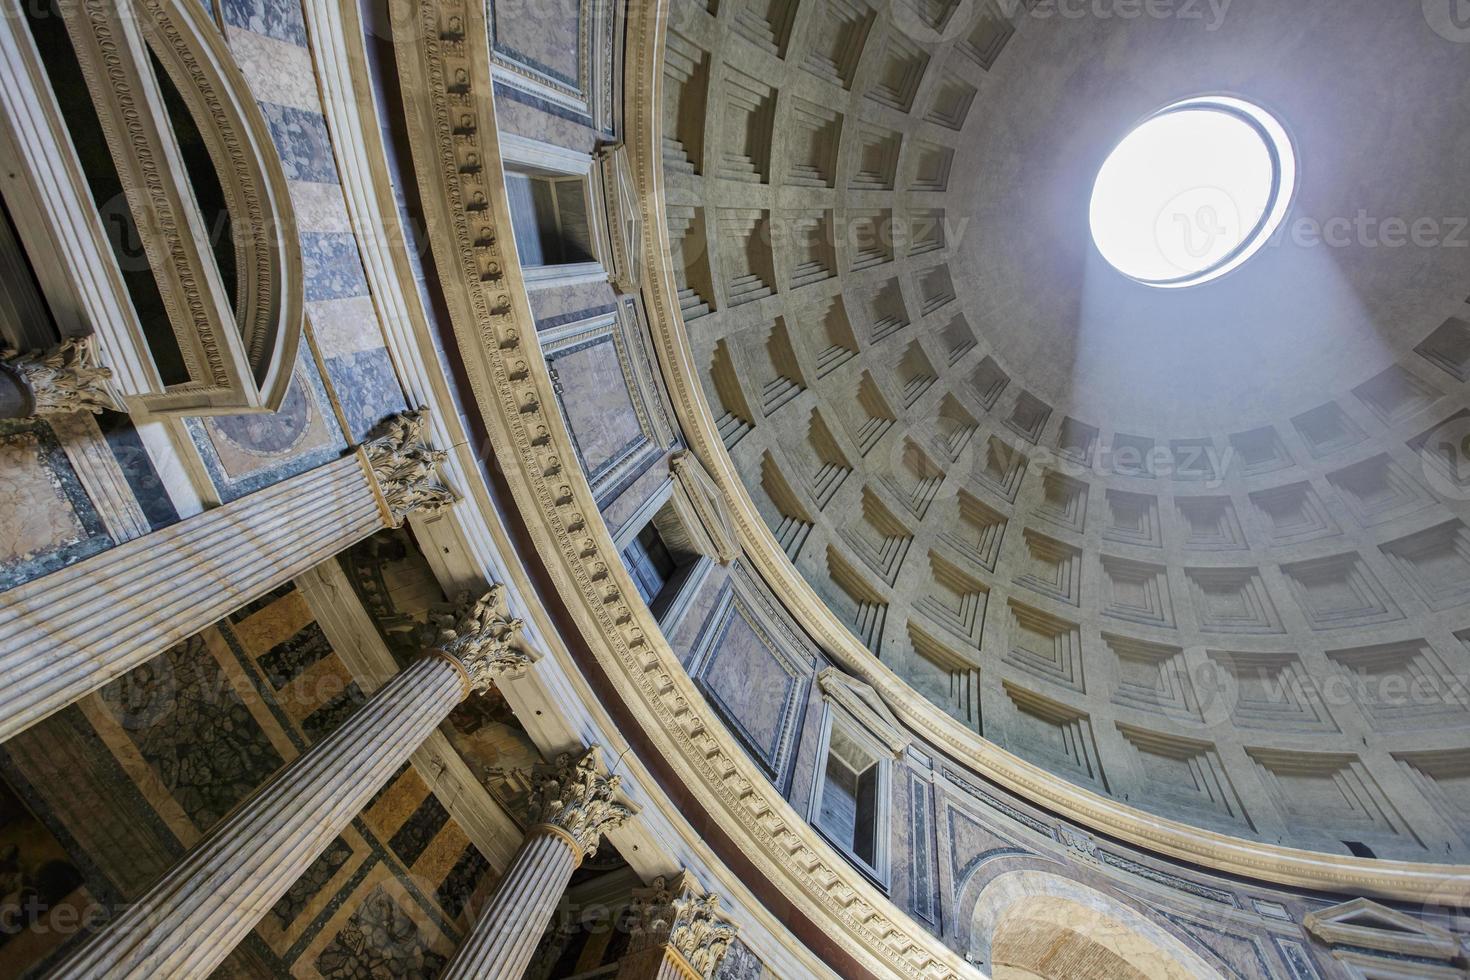 Pantheon in Rom, Italien foto